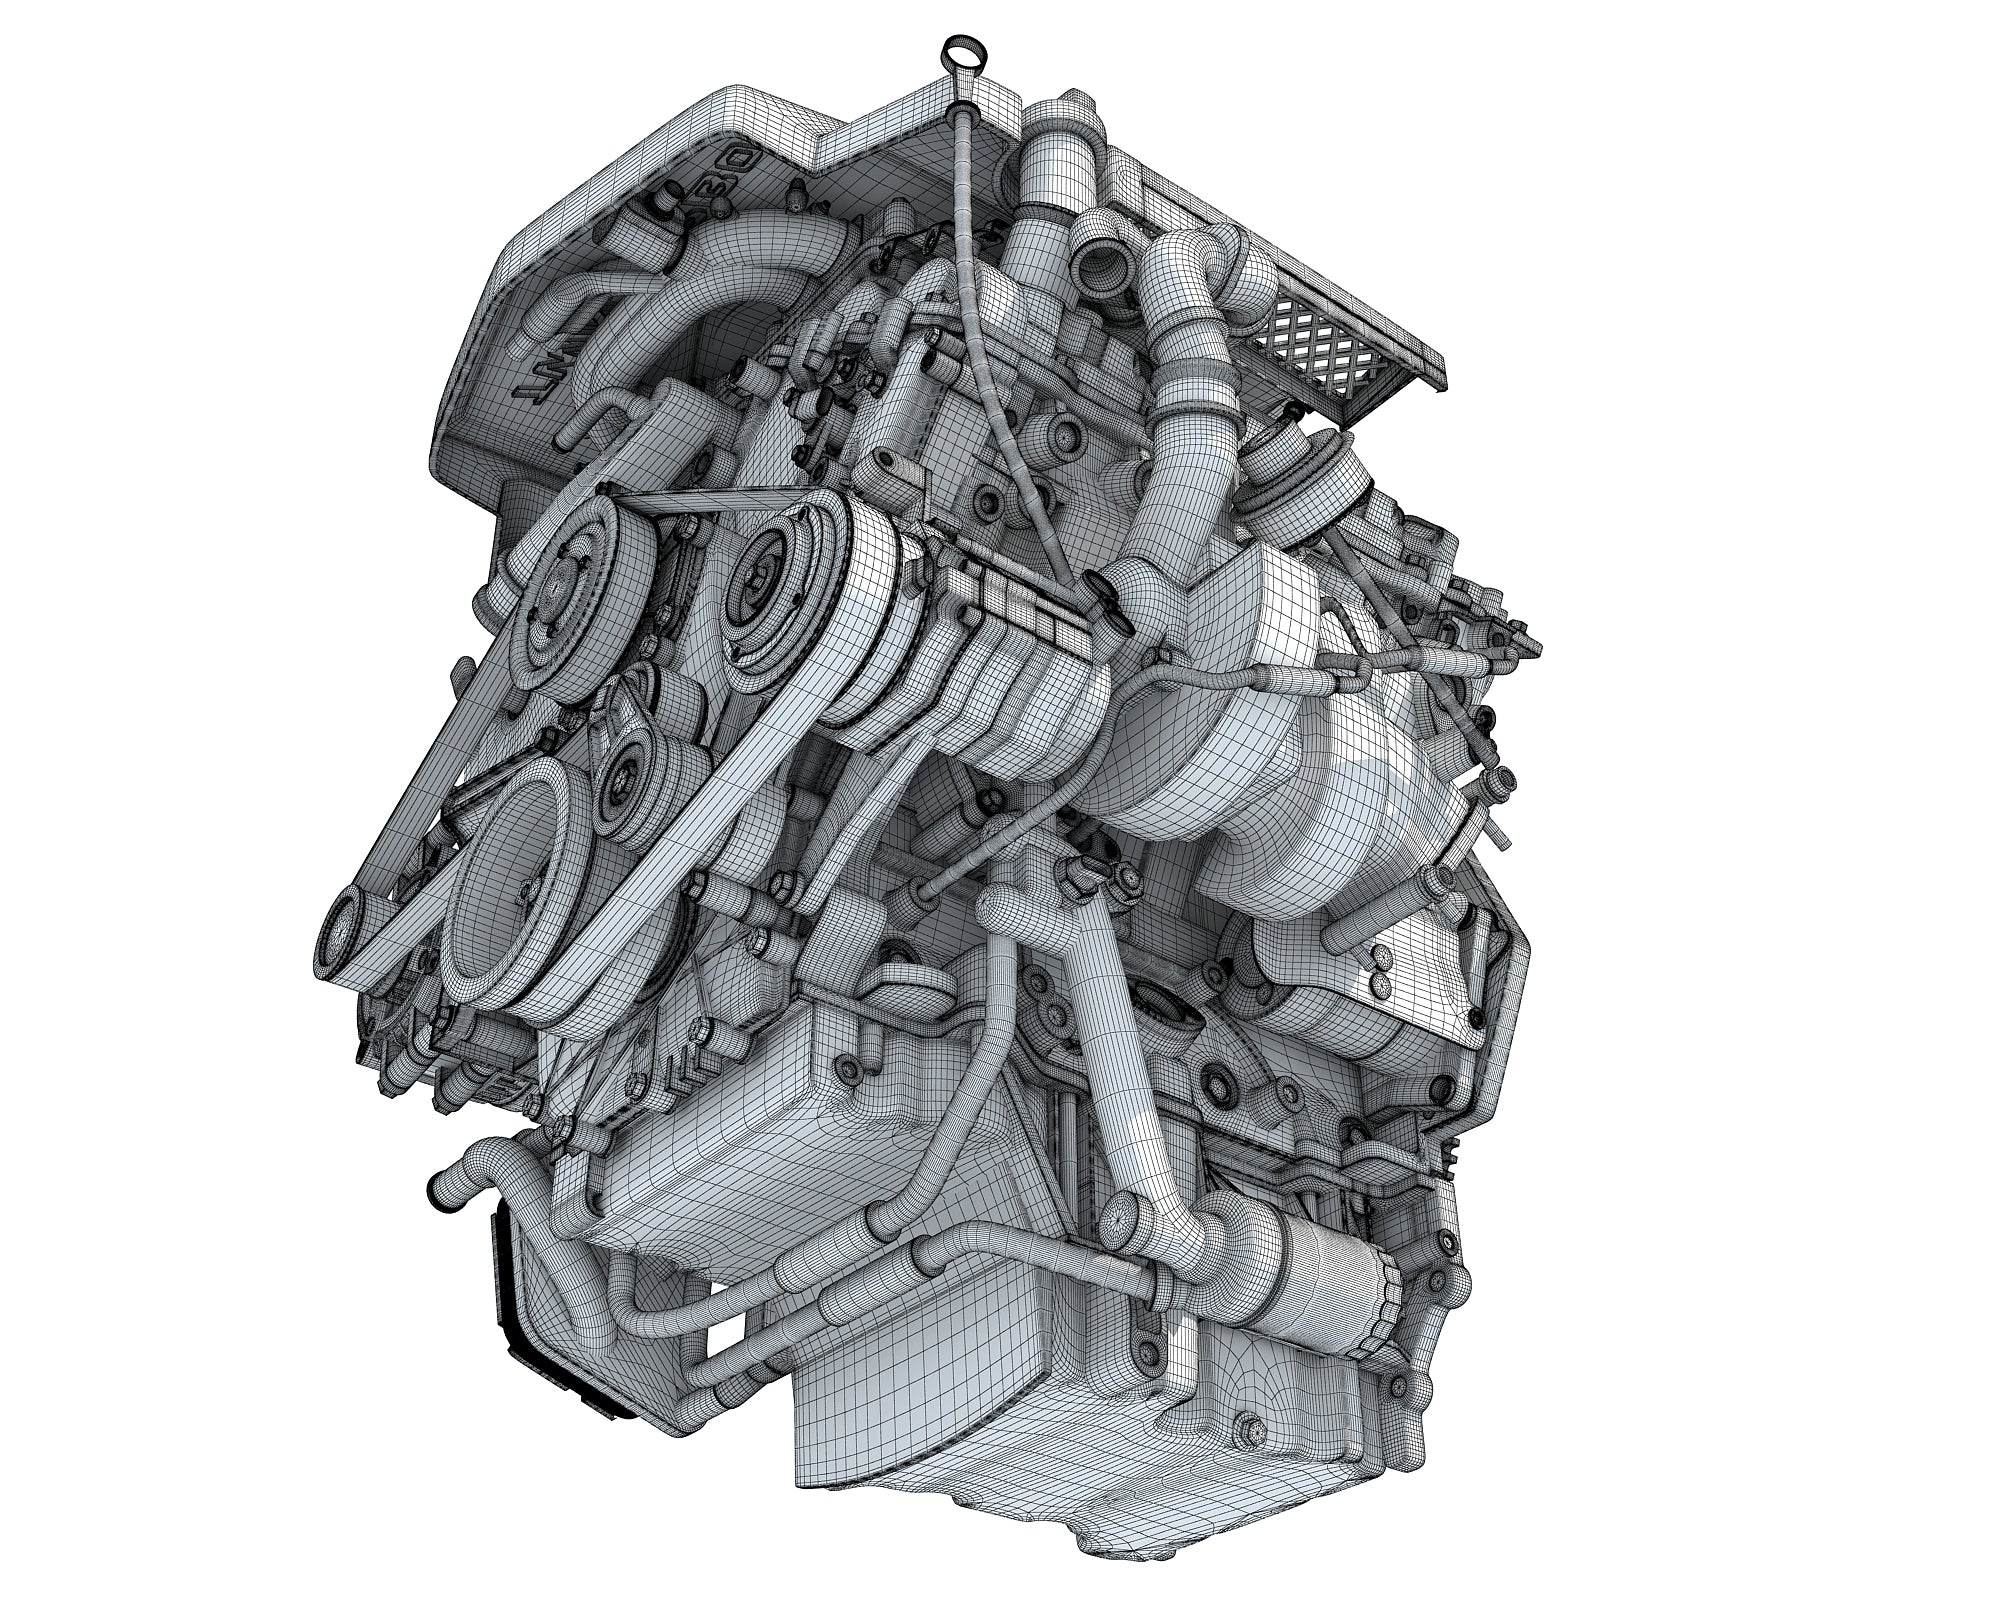 Inside Engine - 3D Models